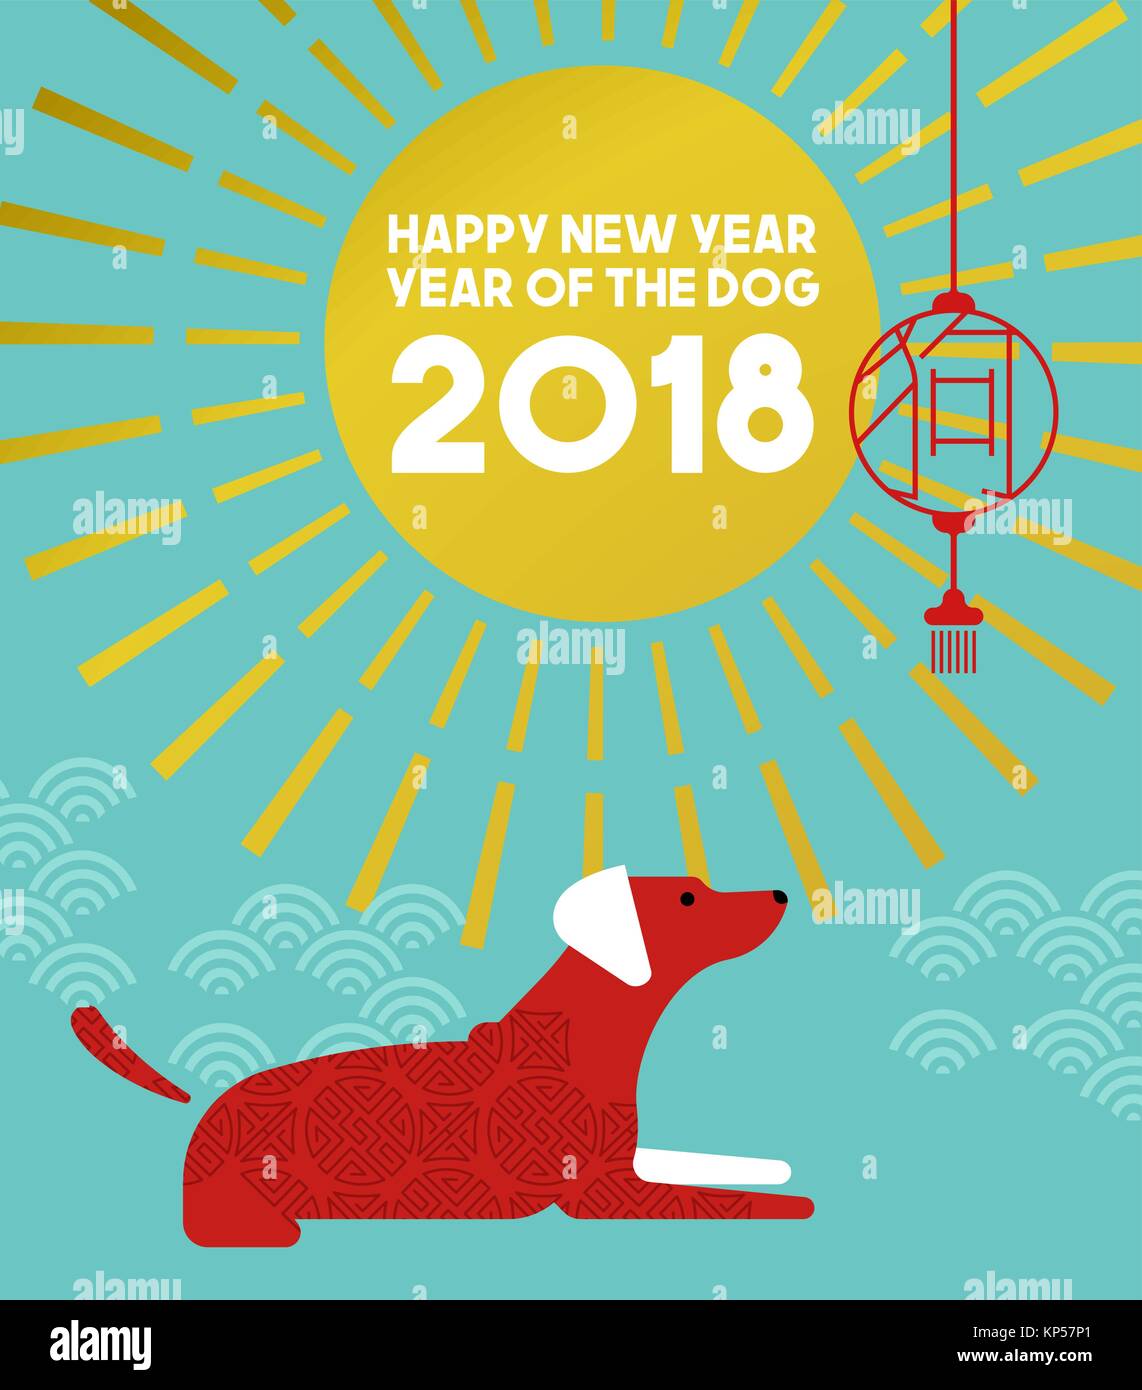 Chinesisches neues Jahr des Hundes 2018 Abbildung im modernen Stil mit traditionellen asiatischen Ornamenten und Dekoration. EPS 10 Vektor. Stock Vektor